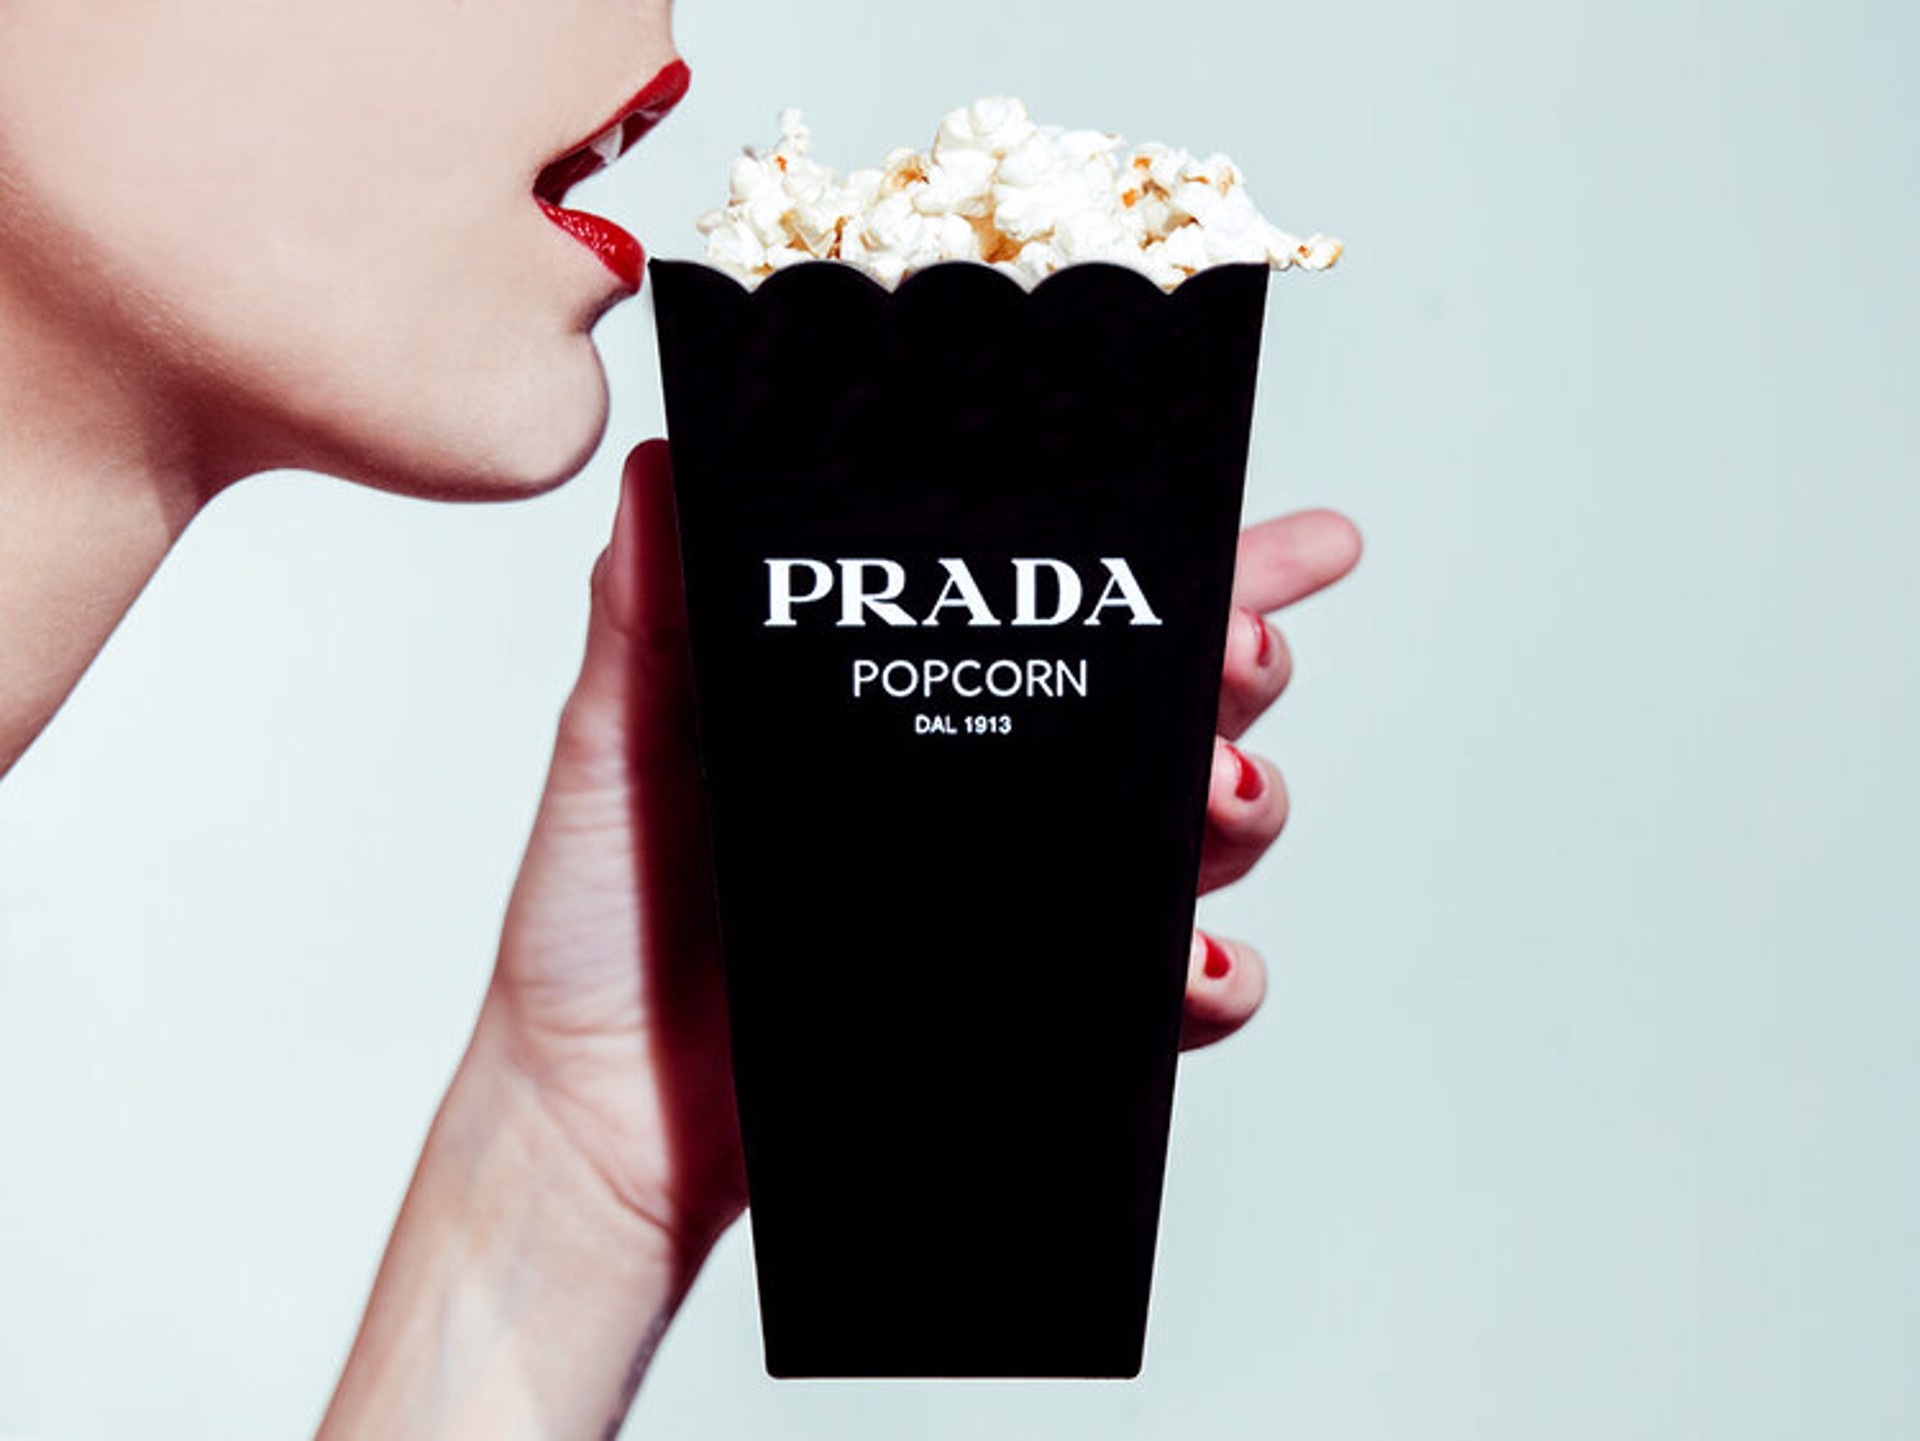 Prada Popcorn by Tyler Shields